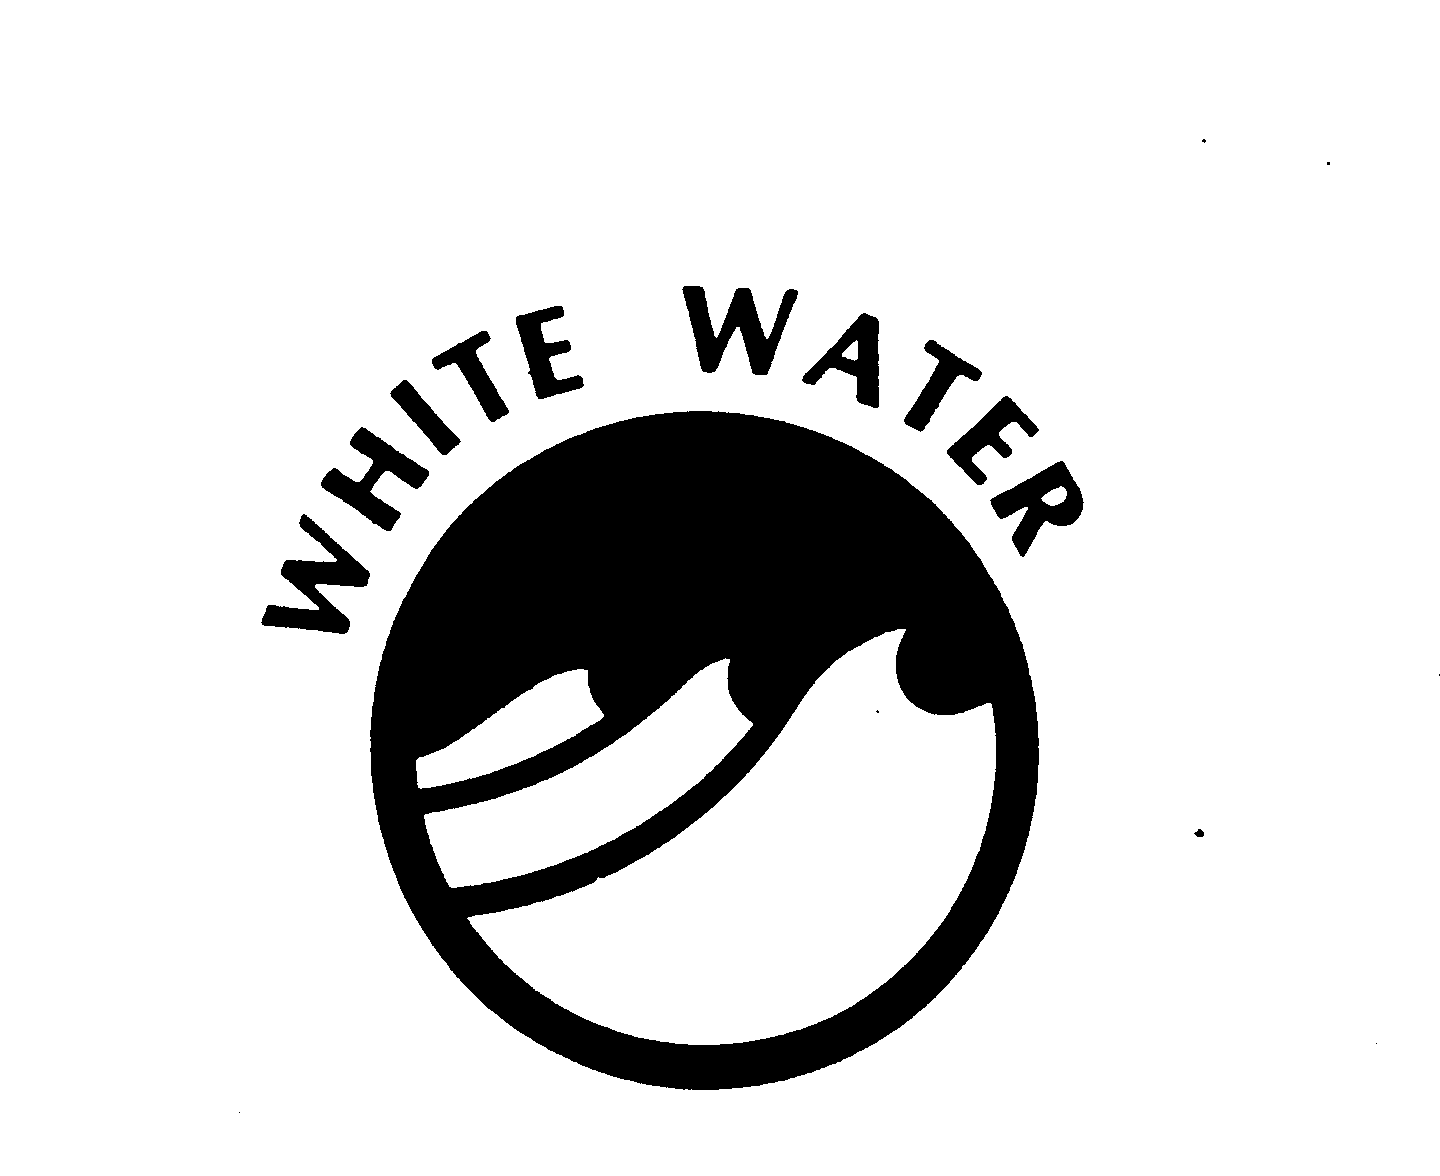 WHITE WATER